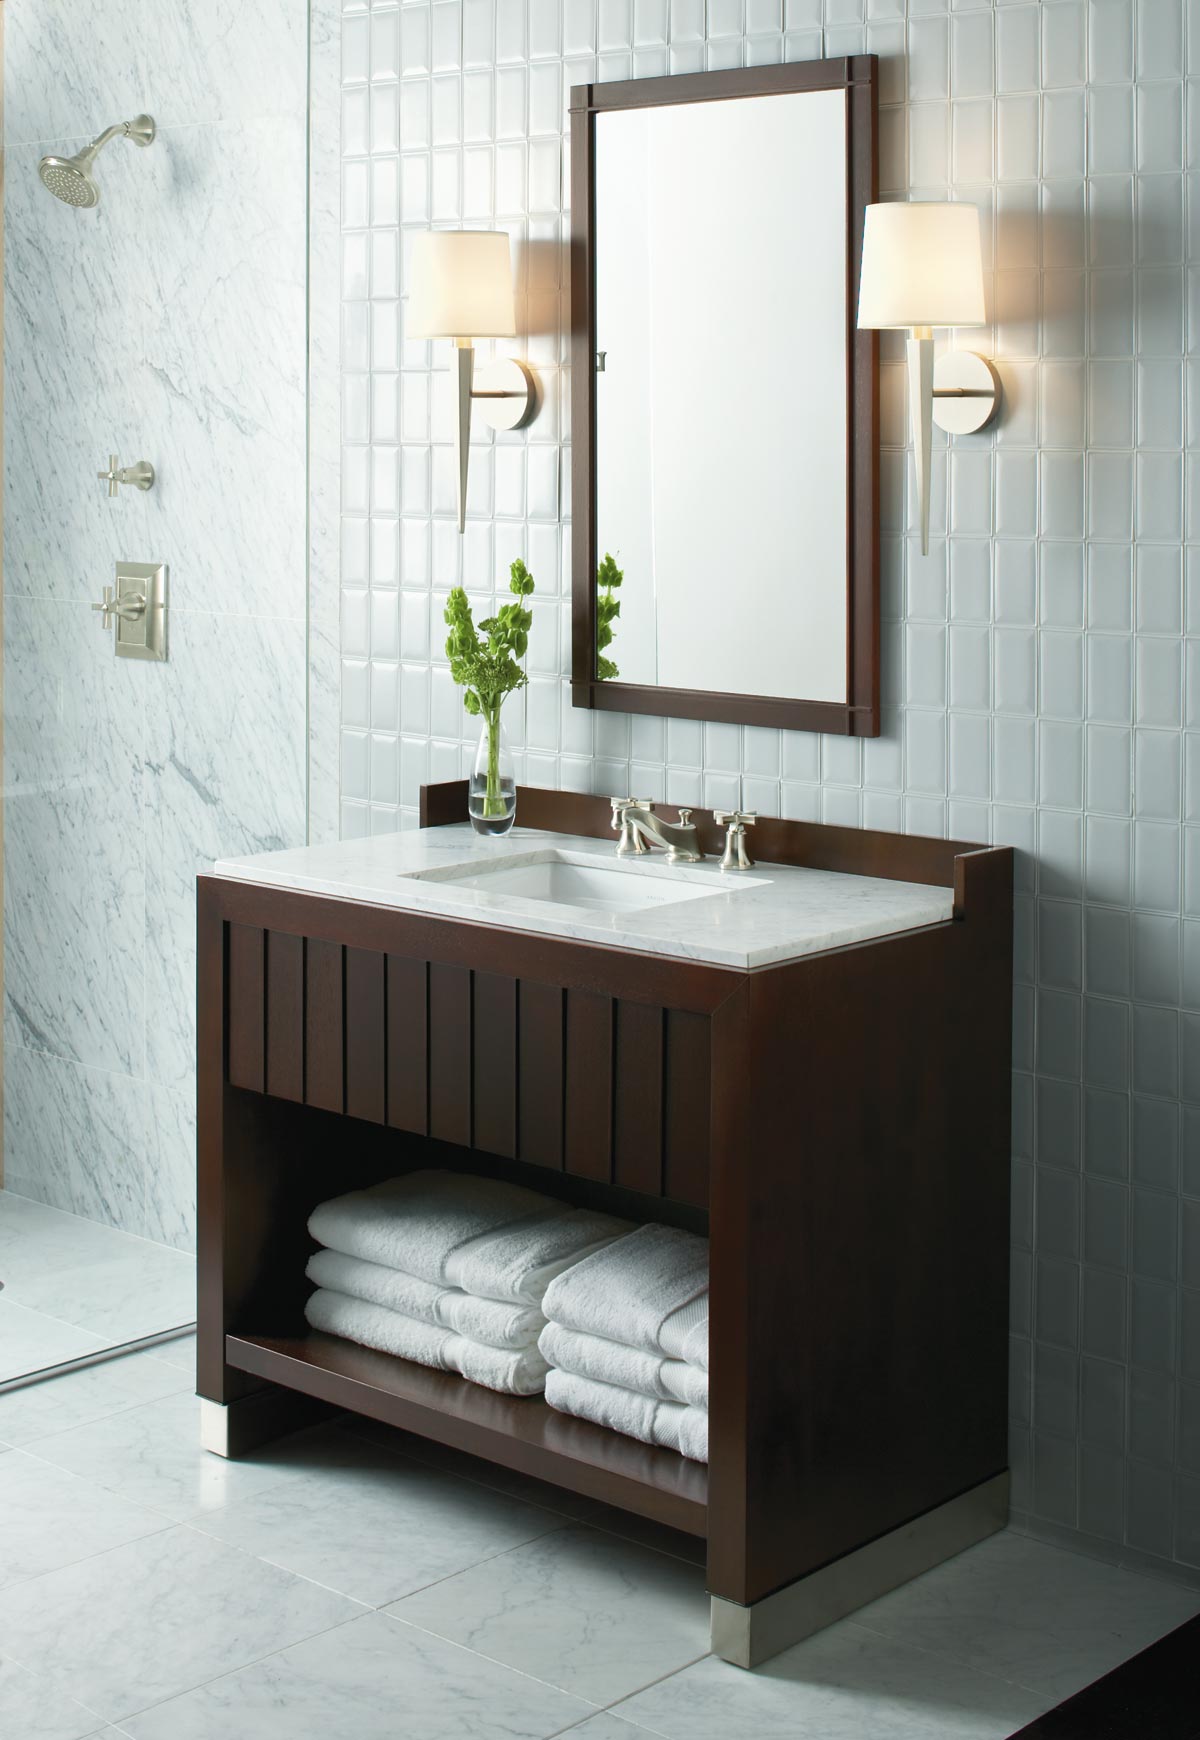 Ванная комната, дизайн Barbara Barry For Him Dressing Table - Kallista